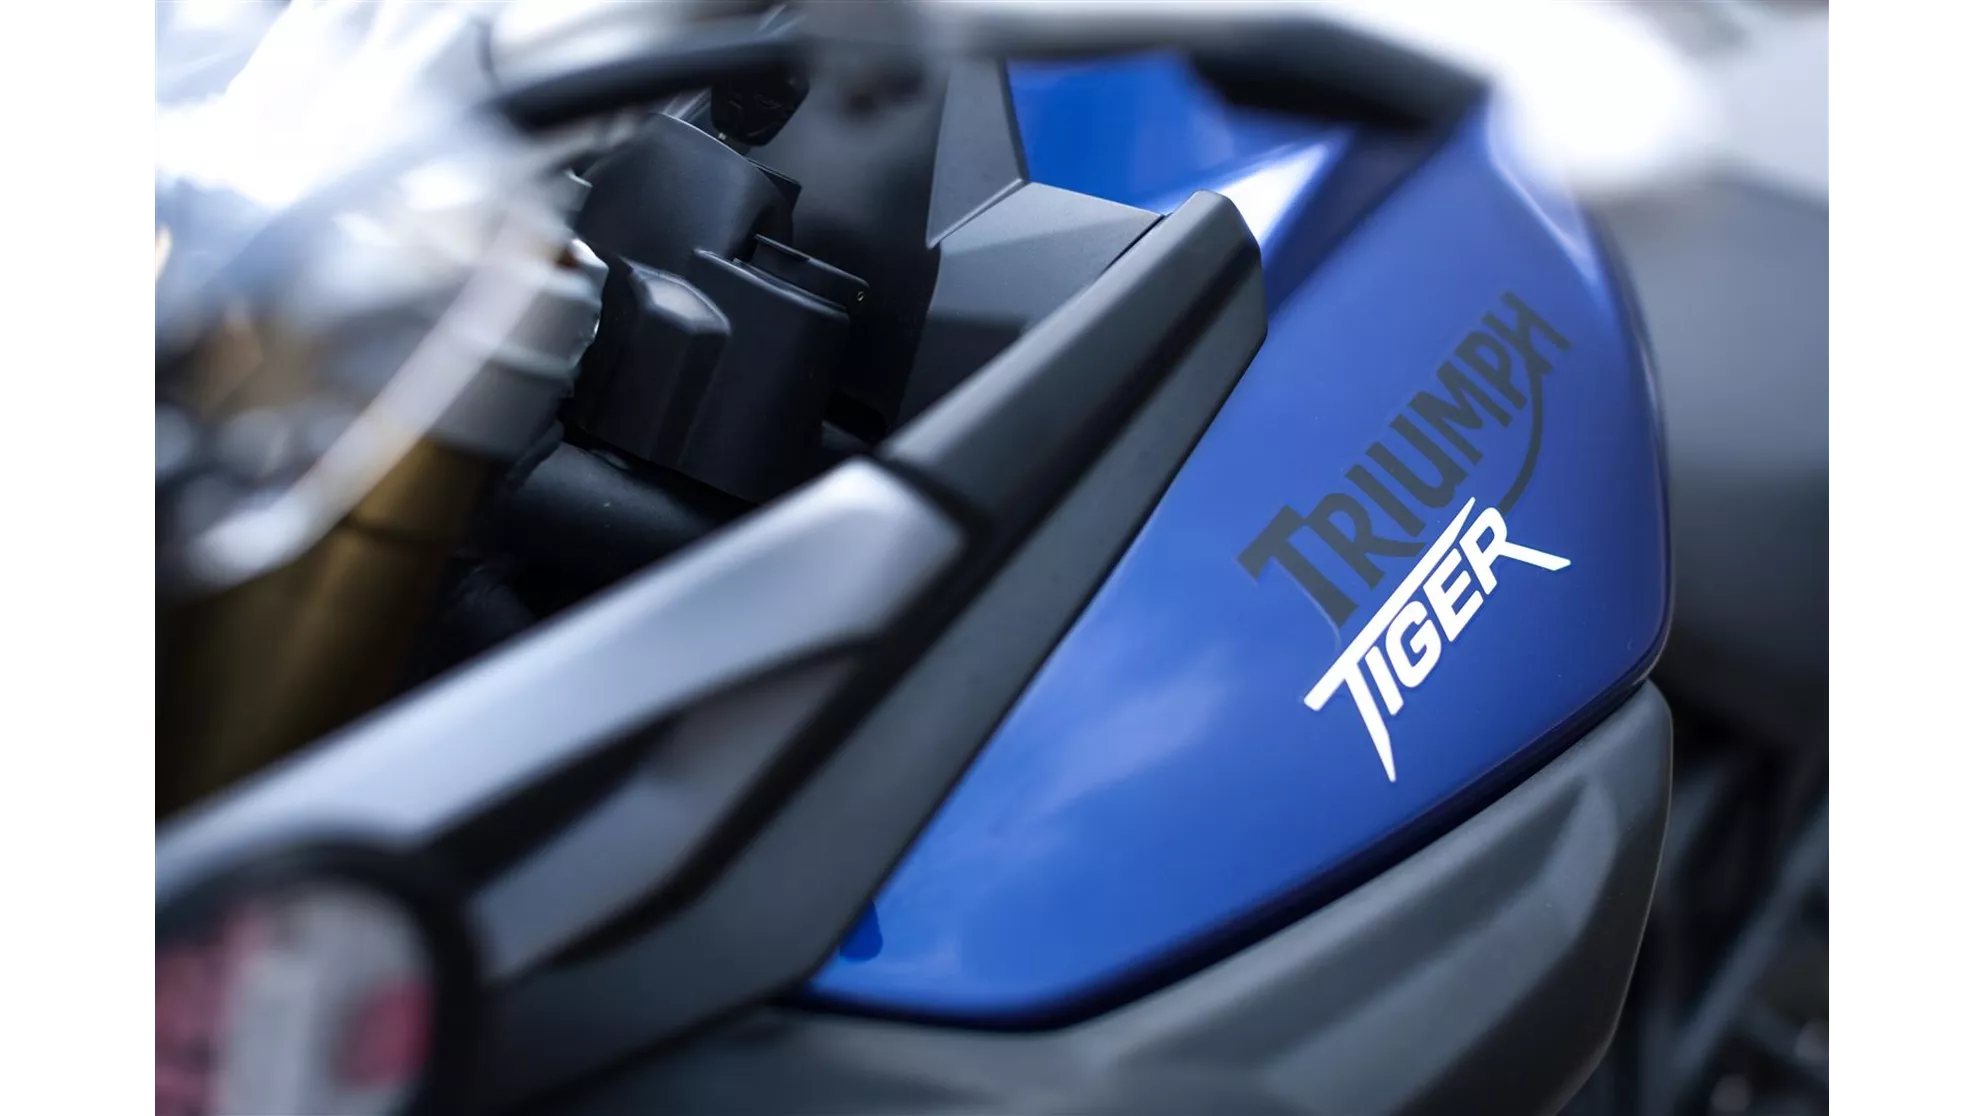 Triumph Tiger 800 - Image 1